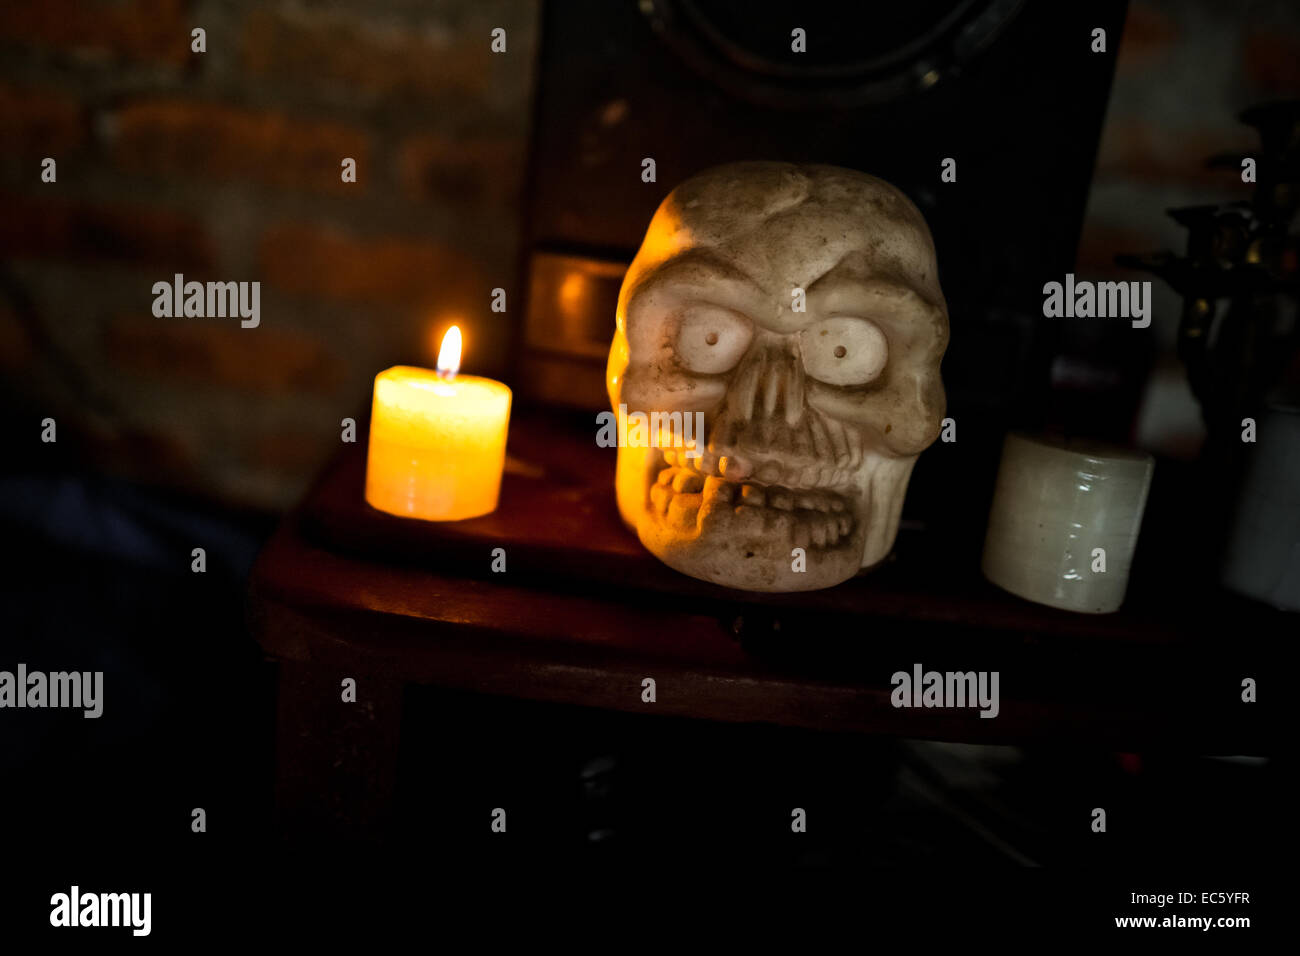 Une sculpture crâne est visible sur l'autel dans un shaman's house à Cali, Colombie, le 17 avril 2013. Banque D'Images